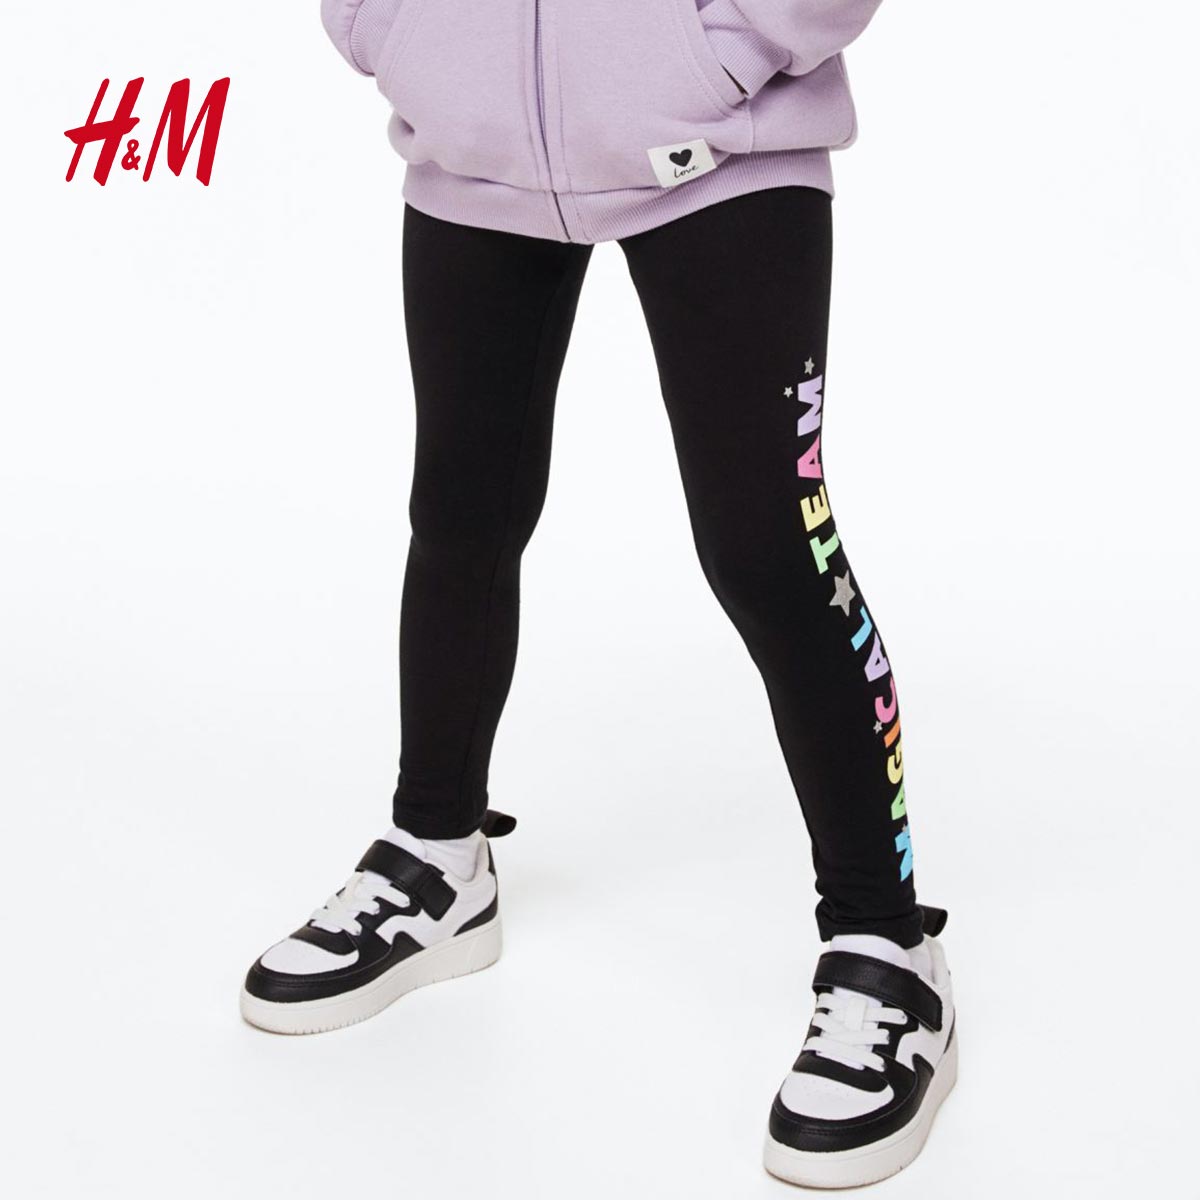 H&M BLACK MAGICAL TEAM LEGGING - Peekaboo